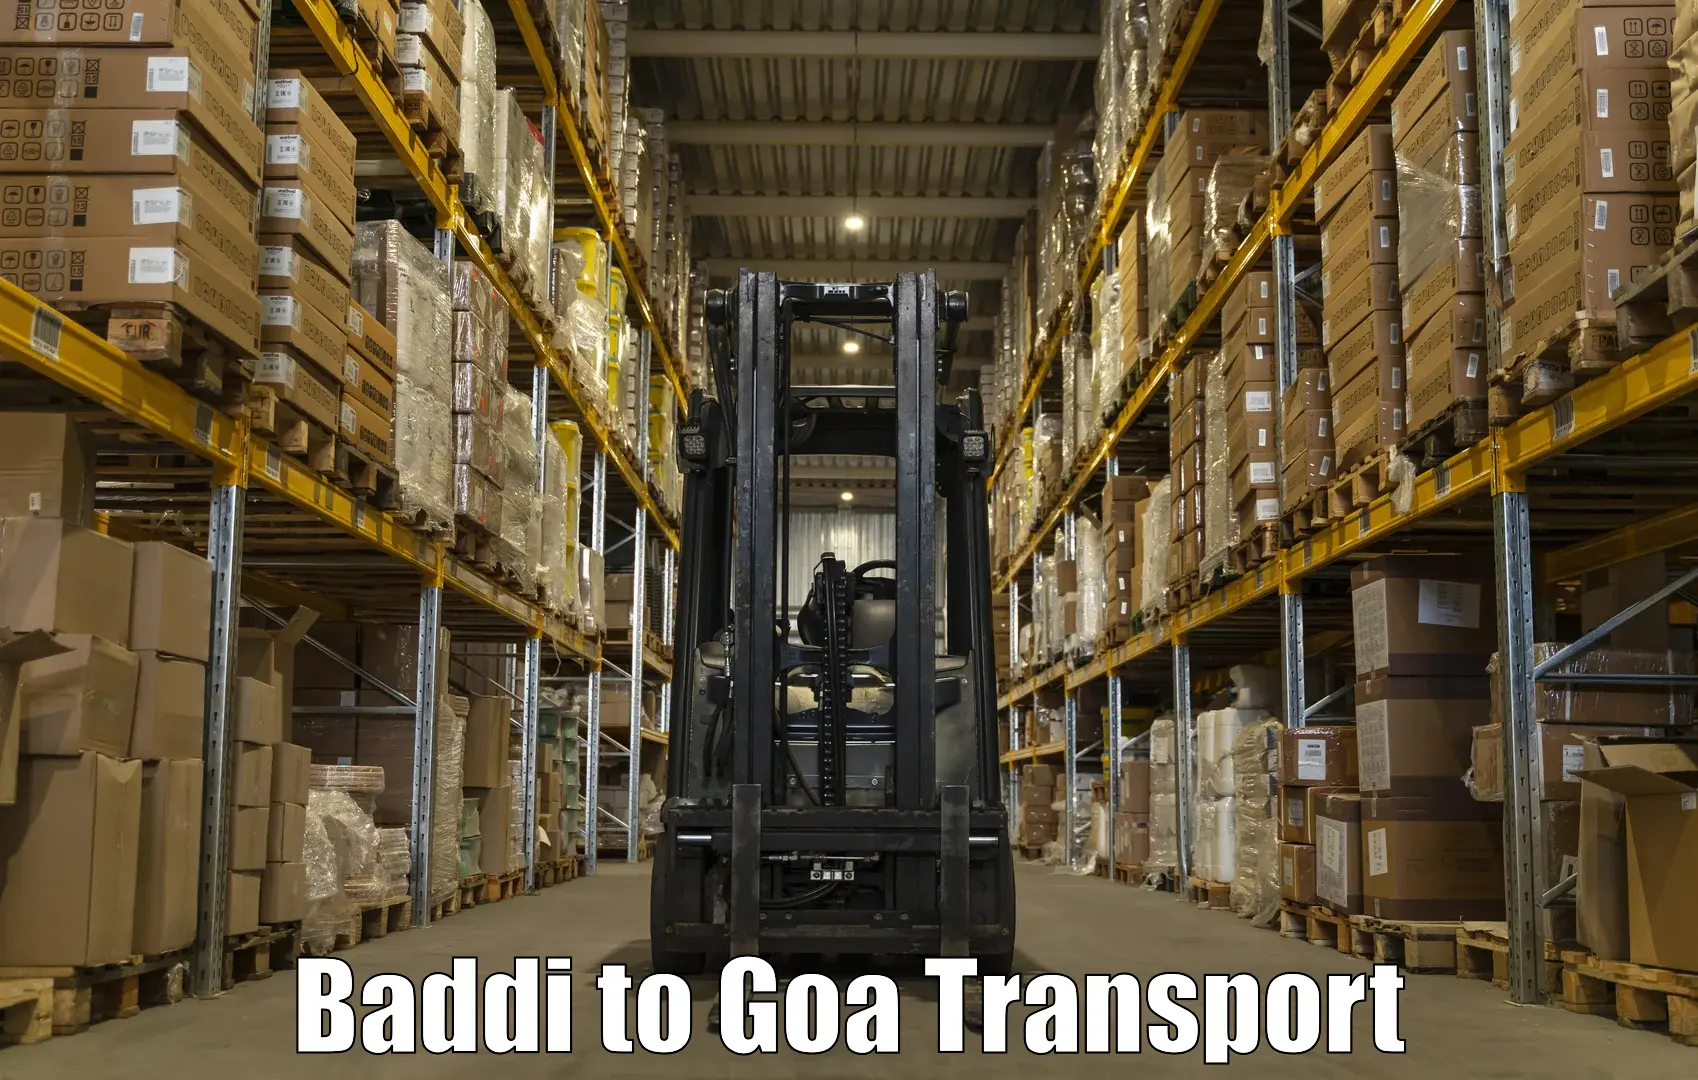 Delivery service Baddi to Bicholim